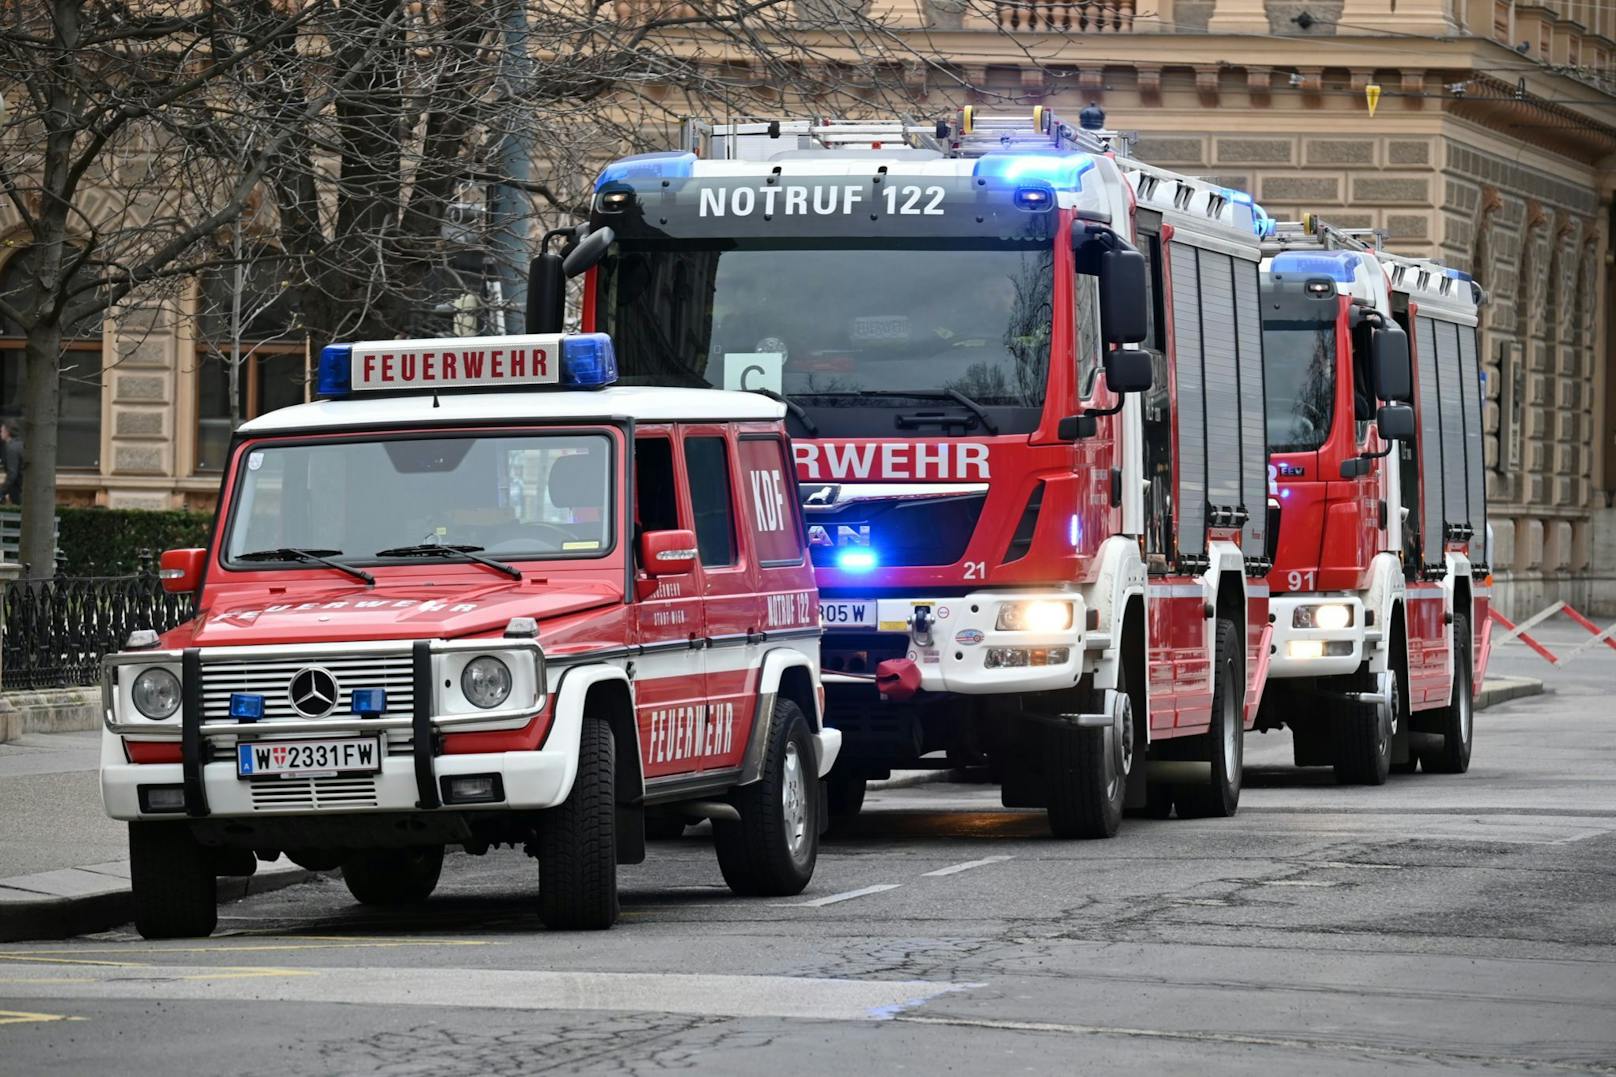 Am Burgring standen dutzende Einsatzfahrzeuge der Feuerwehr, Rettung und Polizei im Einsatz.